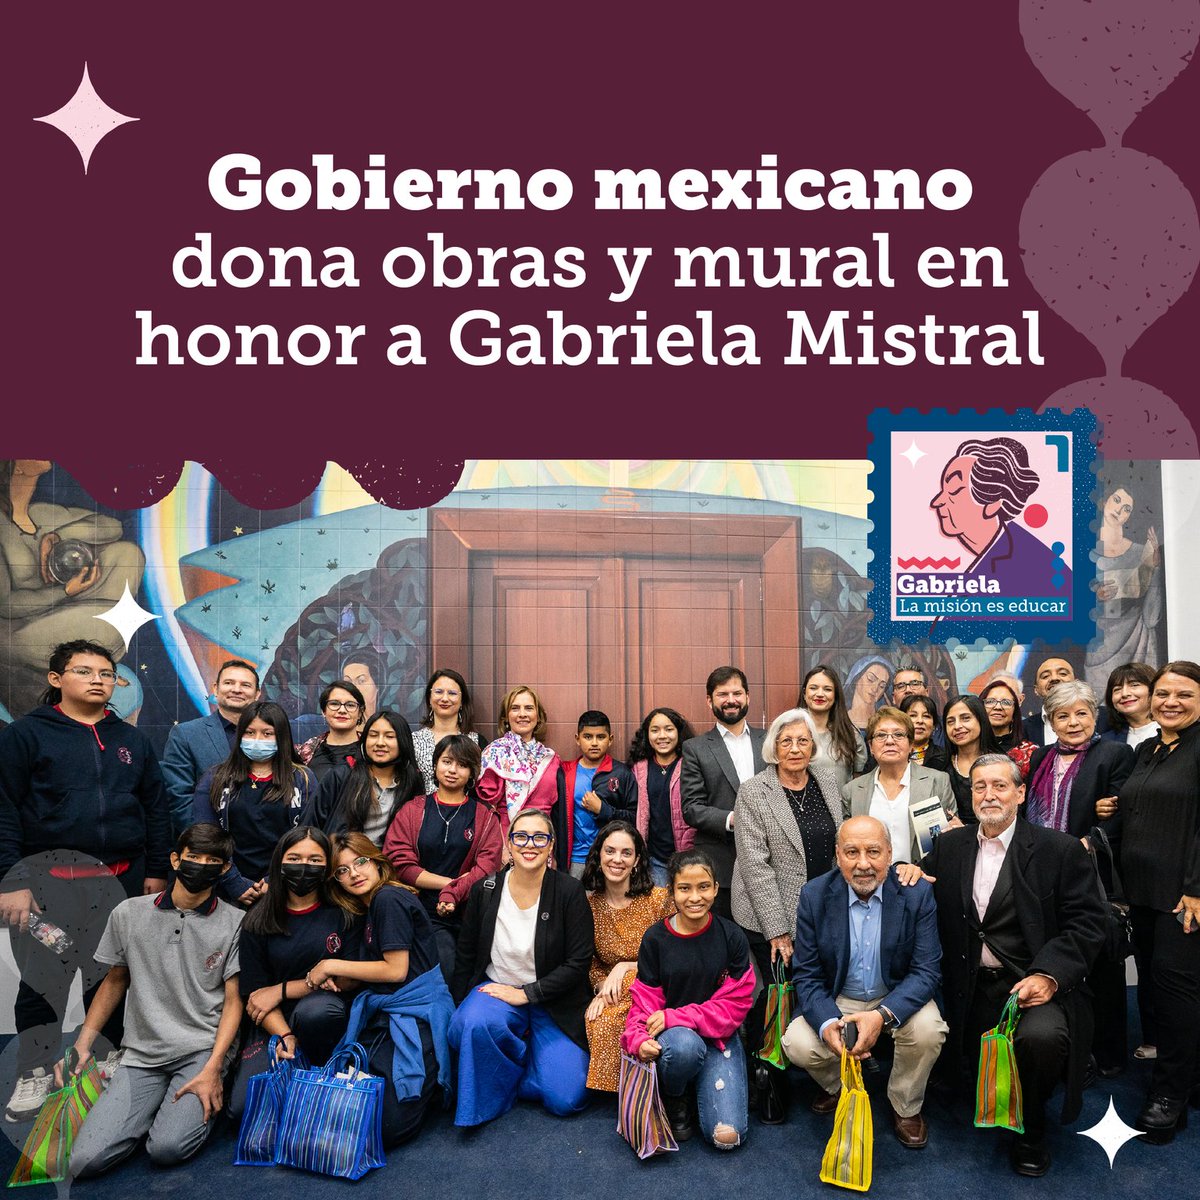 A 100 años de la visita de Gabriela Mistral a México, el gobierno de este país donó obras y un mural en su honor, instalado en el Museo de la Educación 📚
Además, anunciamos el Plan de Fortalecimiento de la #EducaciónRural 🍎 Porque #LaMisiónEsEducar 💪 s.gob.cl/3TD5kcn